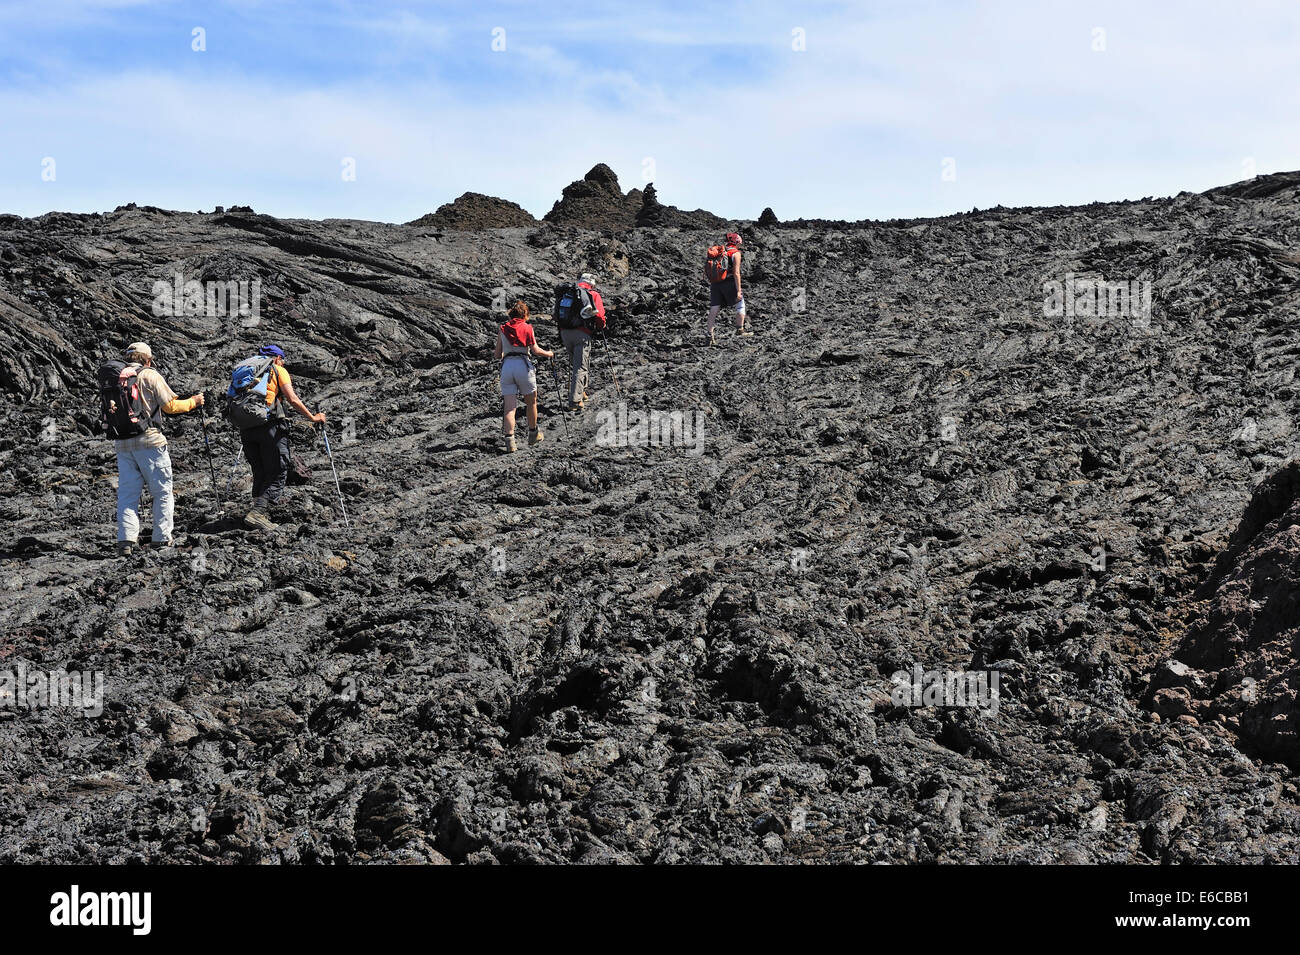 Groupe de randonneurs marchant sur lave refroidie, Mauna Loa Volcano, Big Island, Hawaii Volcanoes National Park, États-Unis Banque D'Images